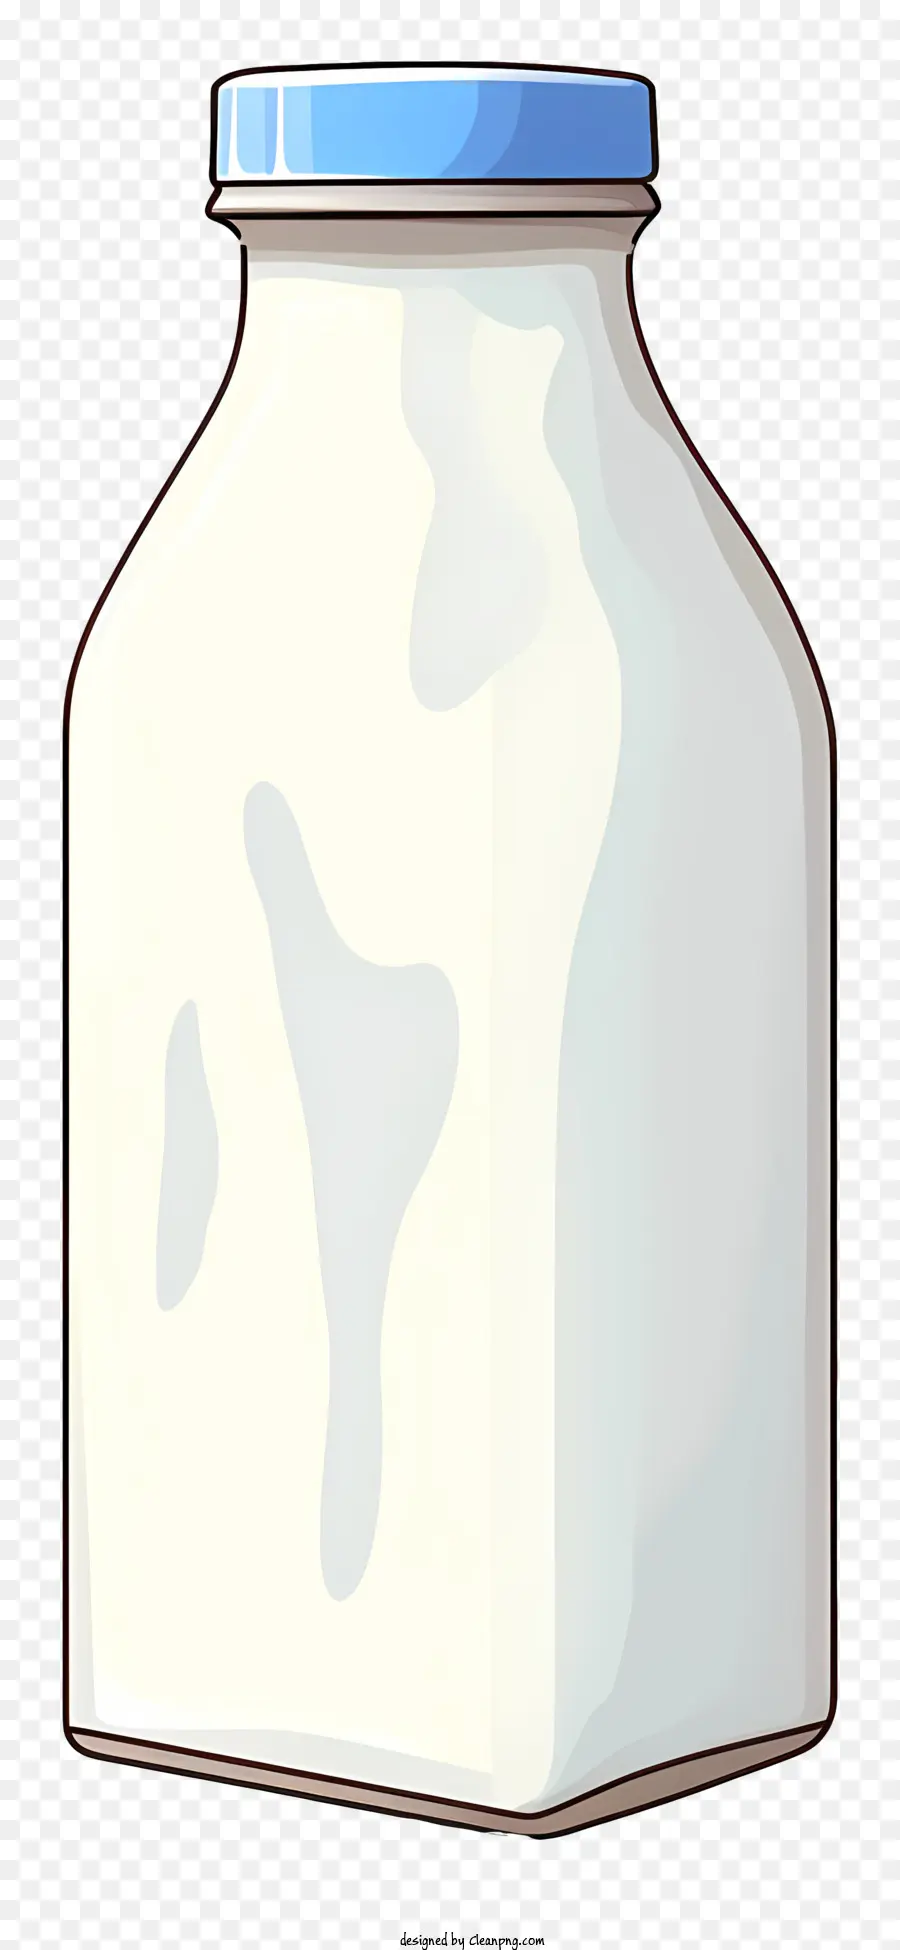 Milchflasche Glasflasche Blaue Kappe leerer Flasche schwarzer Hintergrund - Ein computergeneriertes Bild einer halb leeren Milchflasche